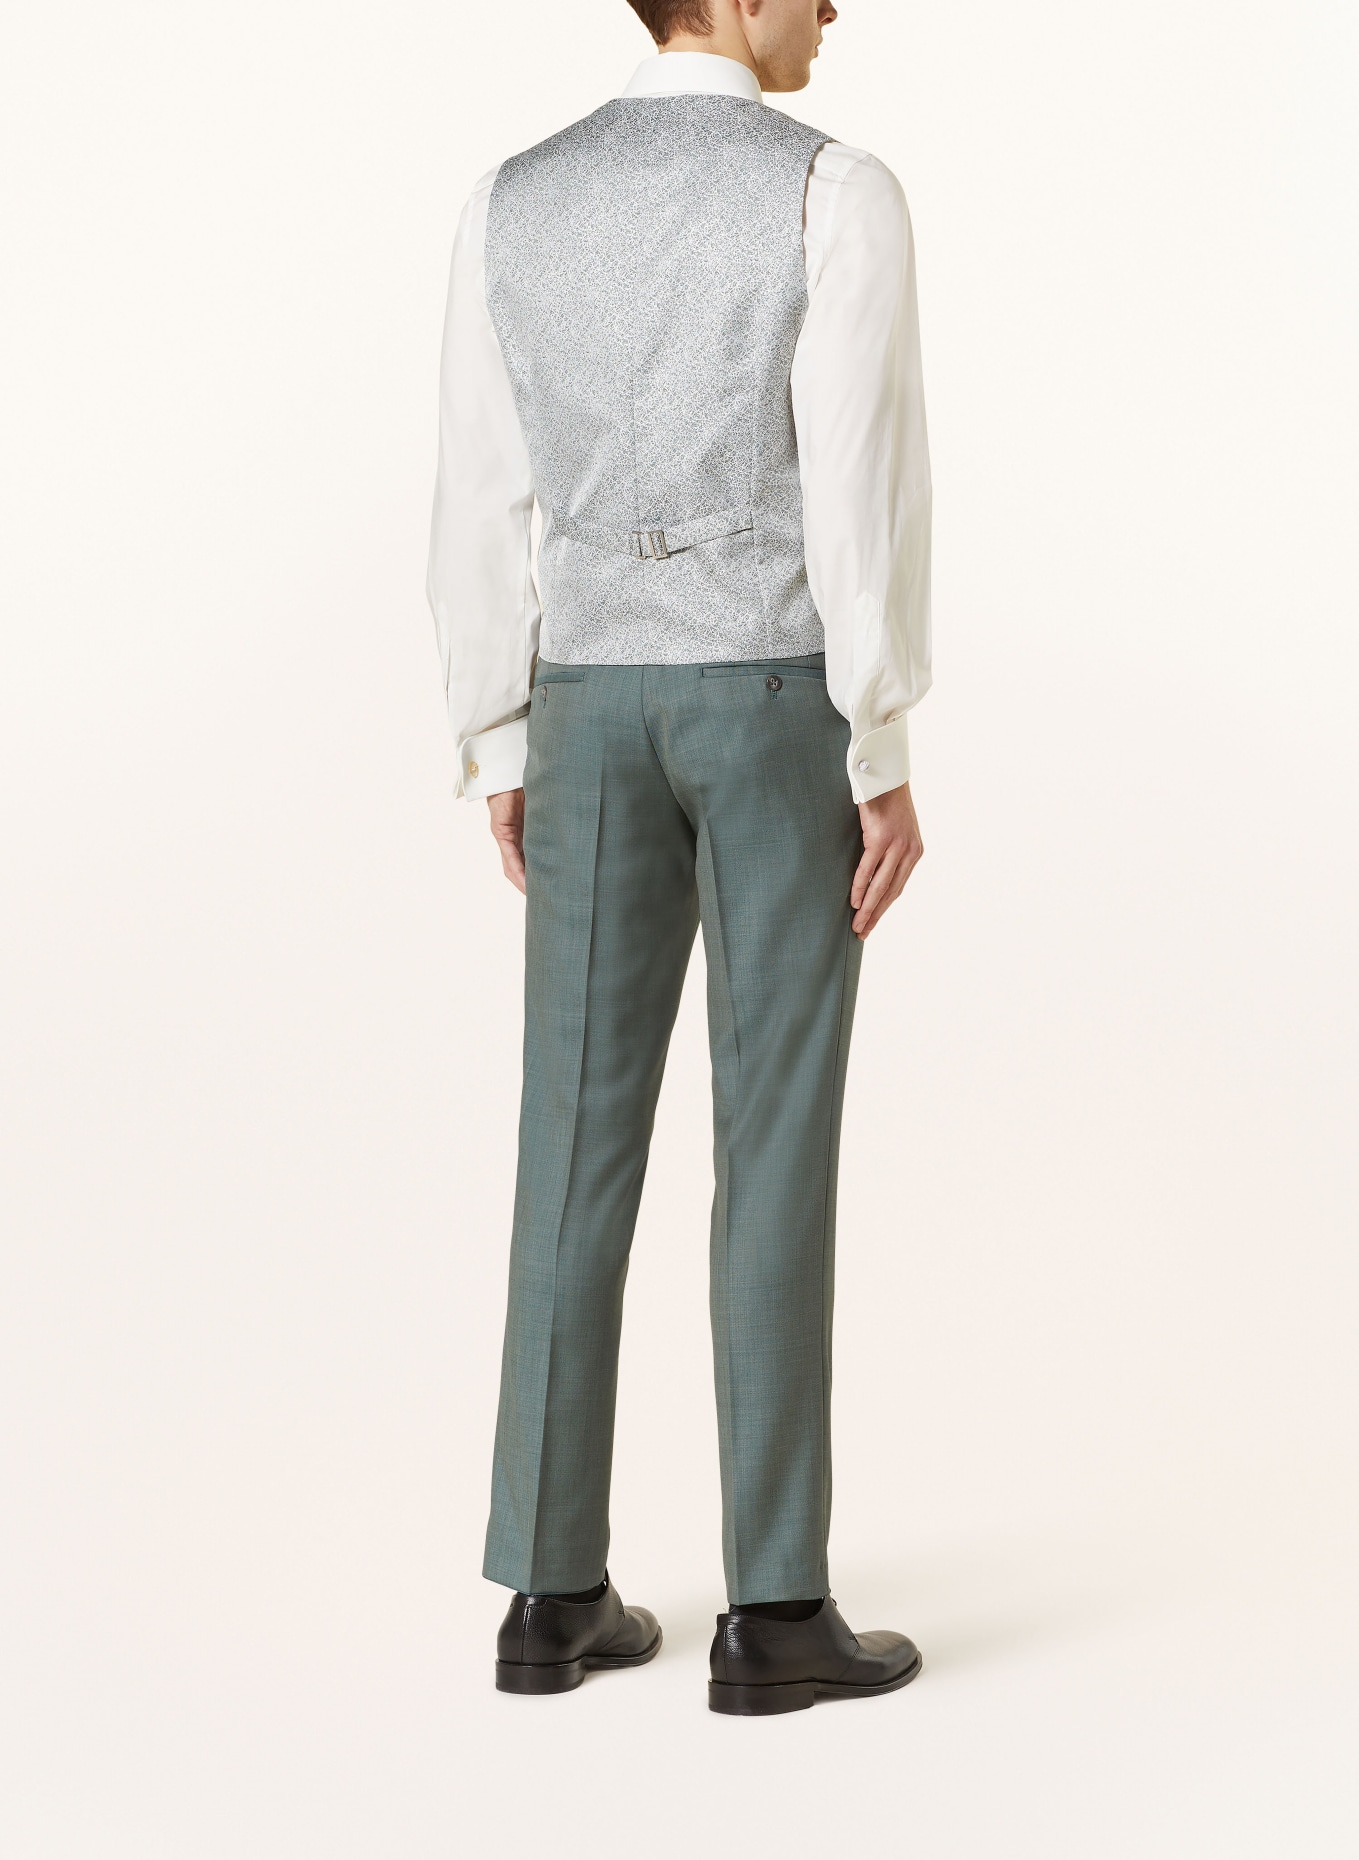 WILVORST Vest extra slim fit, Color: 040 Grün gemustert (Image 3)